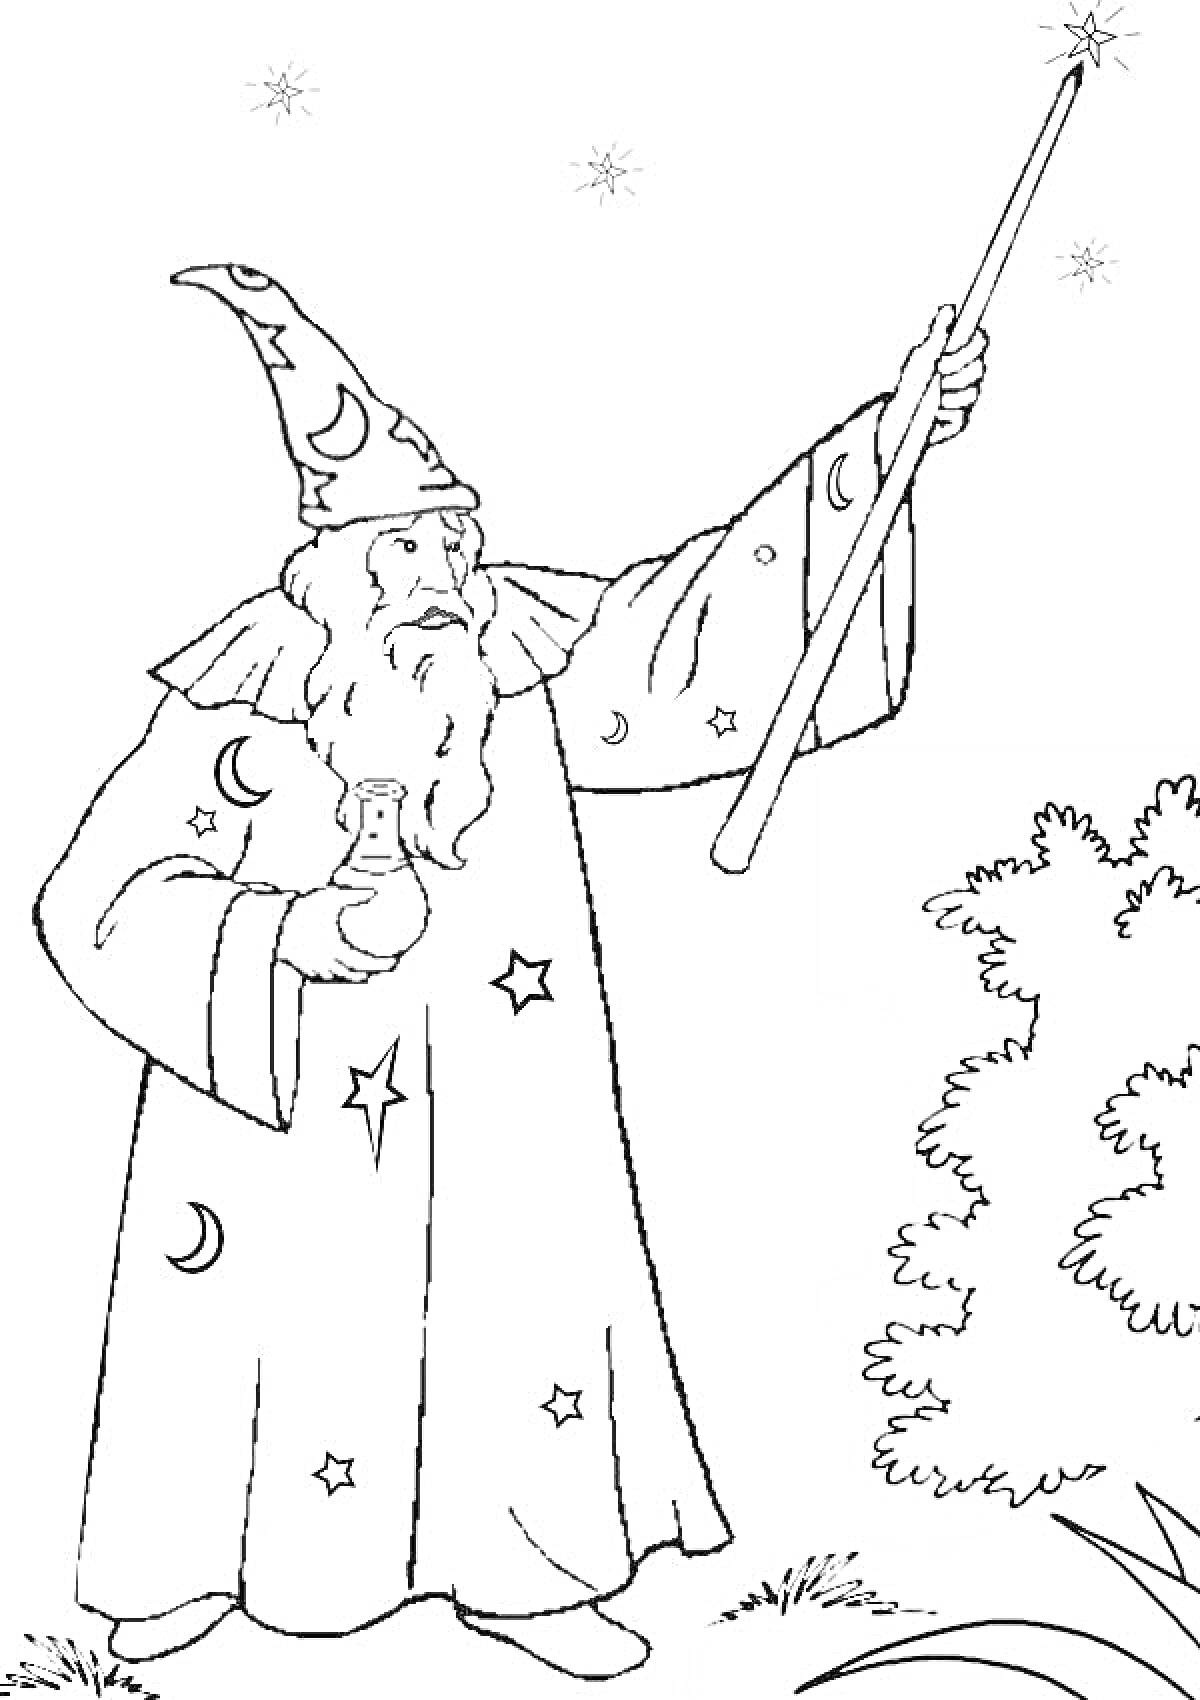 Волшебник с магической палочкой и пузырьком, стоящий рядом с кустом под звездами